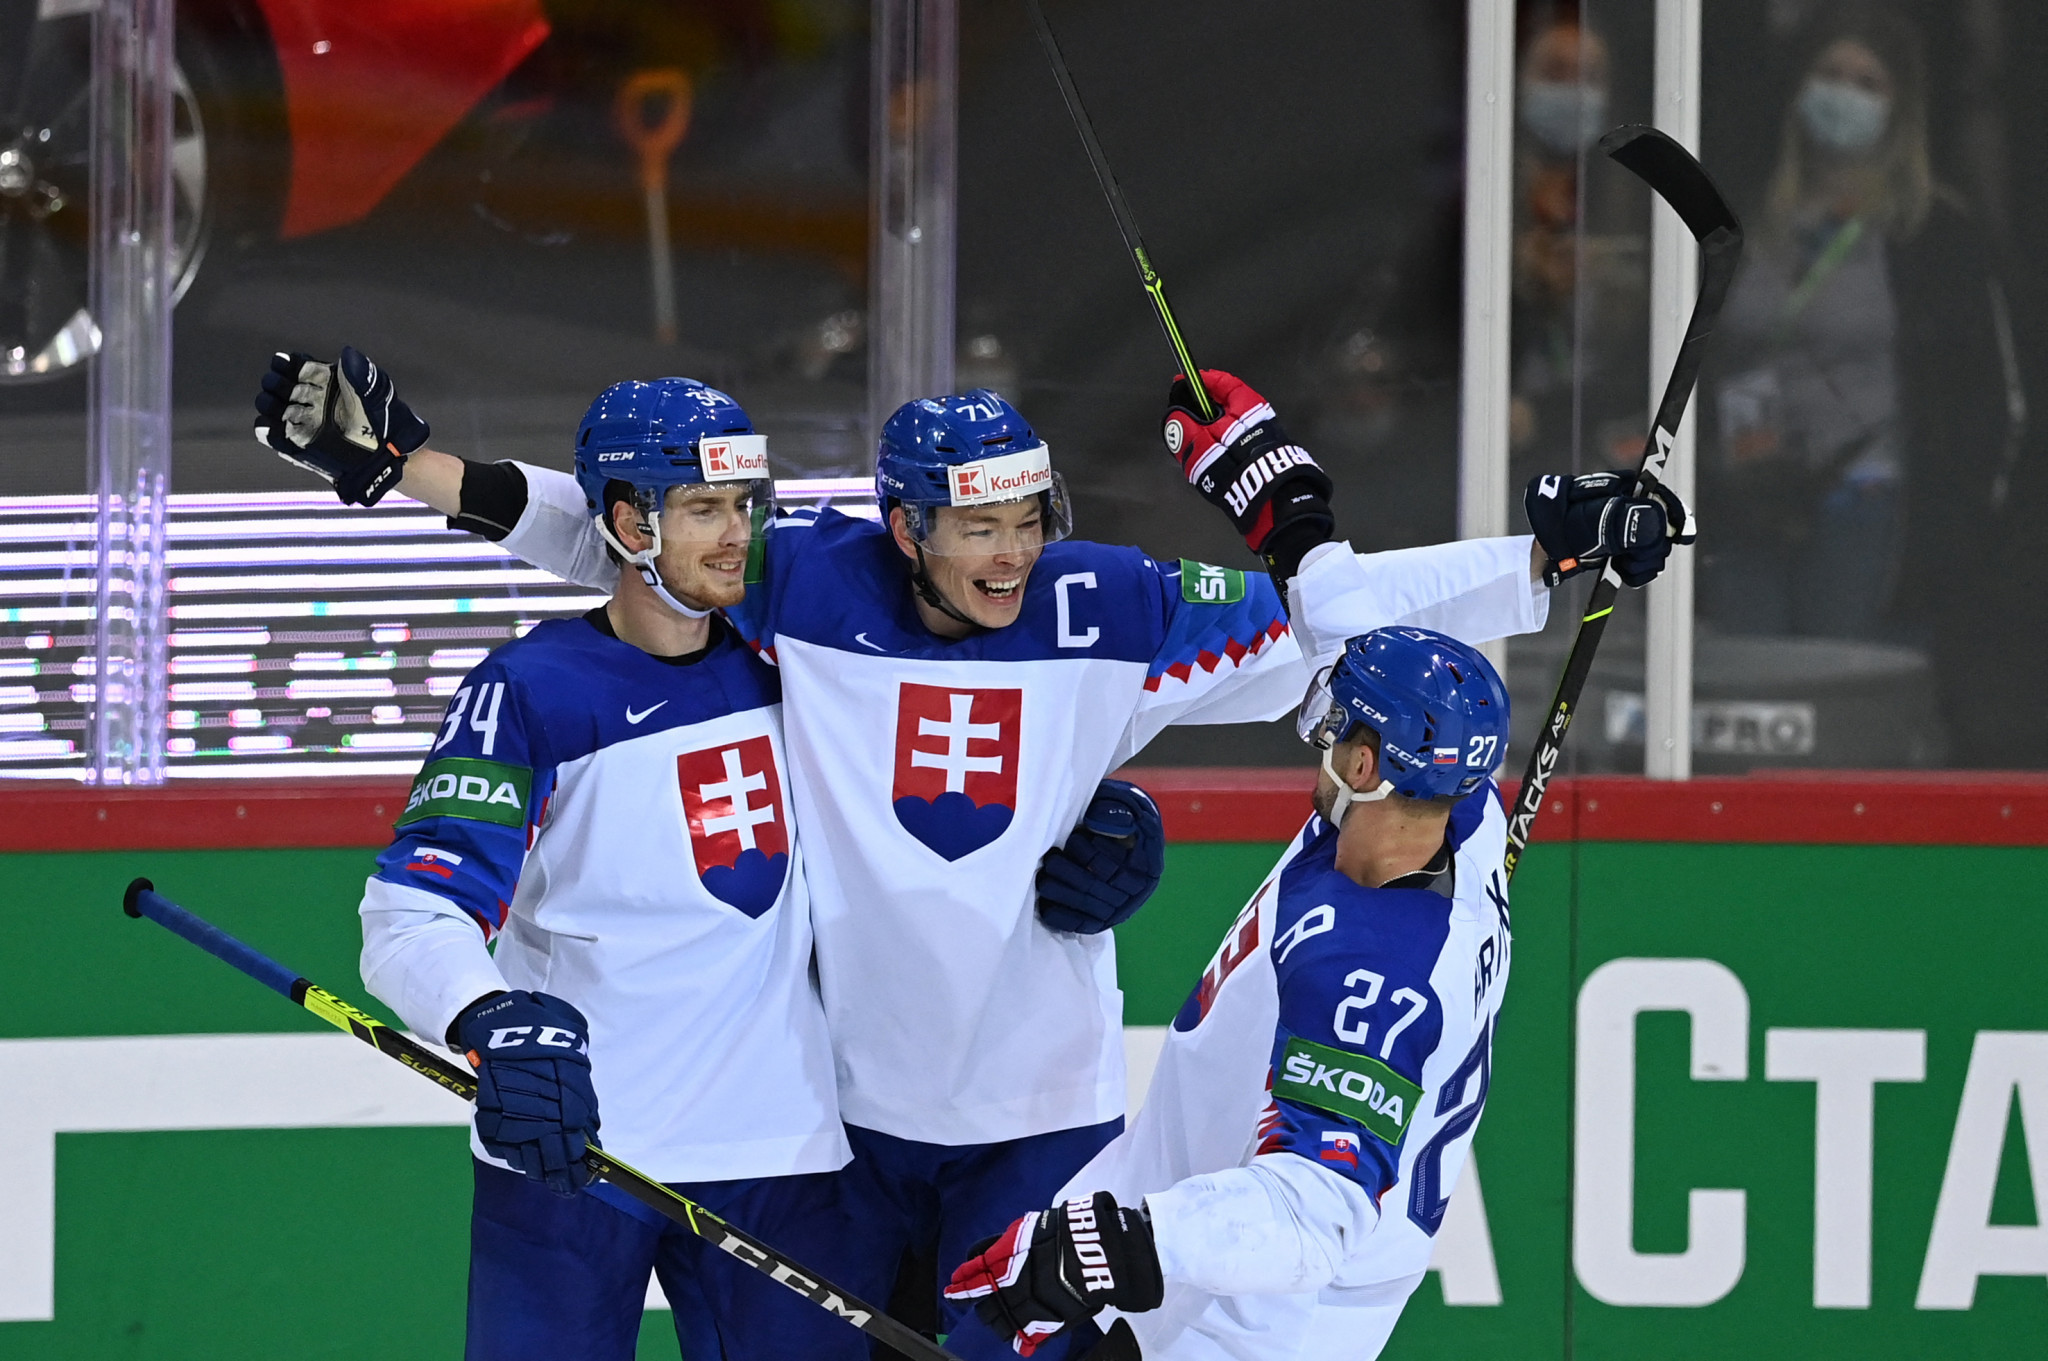 Photo of Slovenský zväz ľadového hokeja nepozval na svetový šampionát hráčov KHL